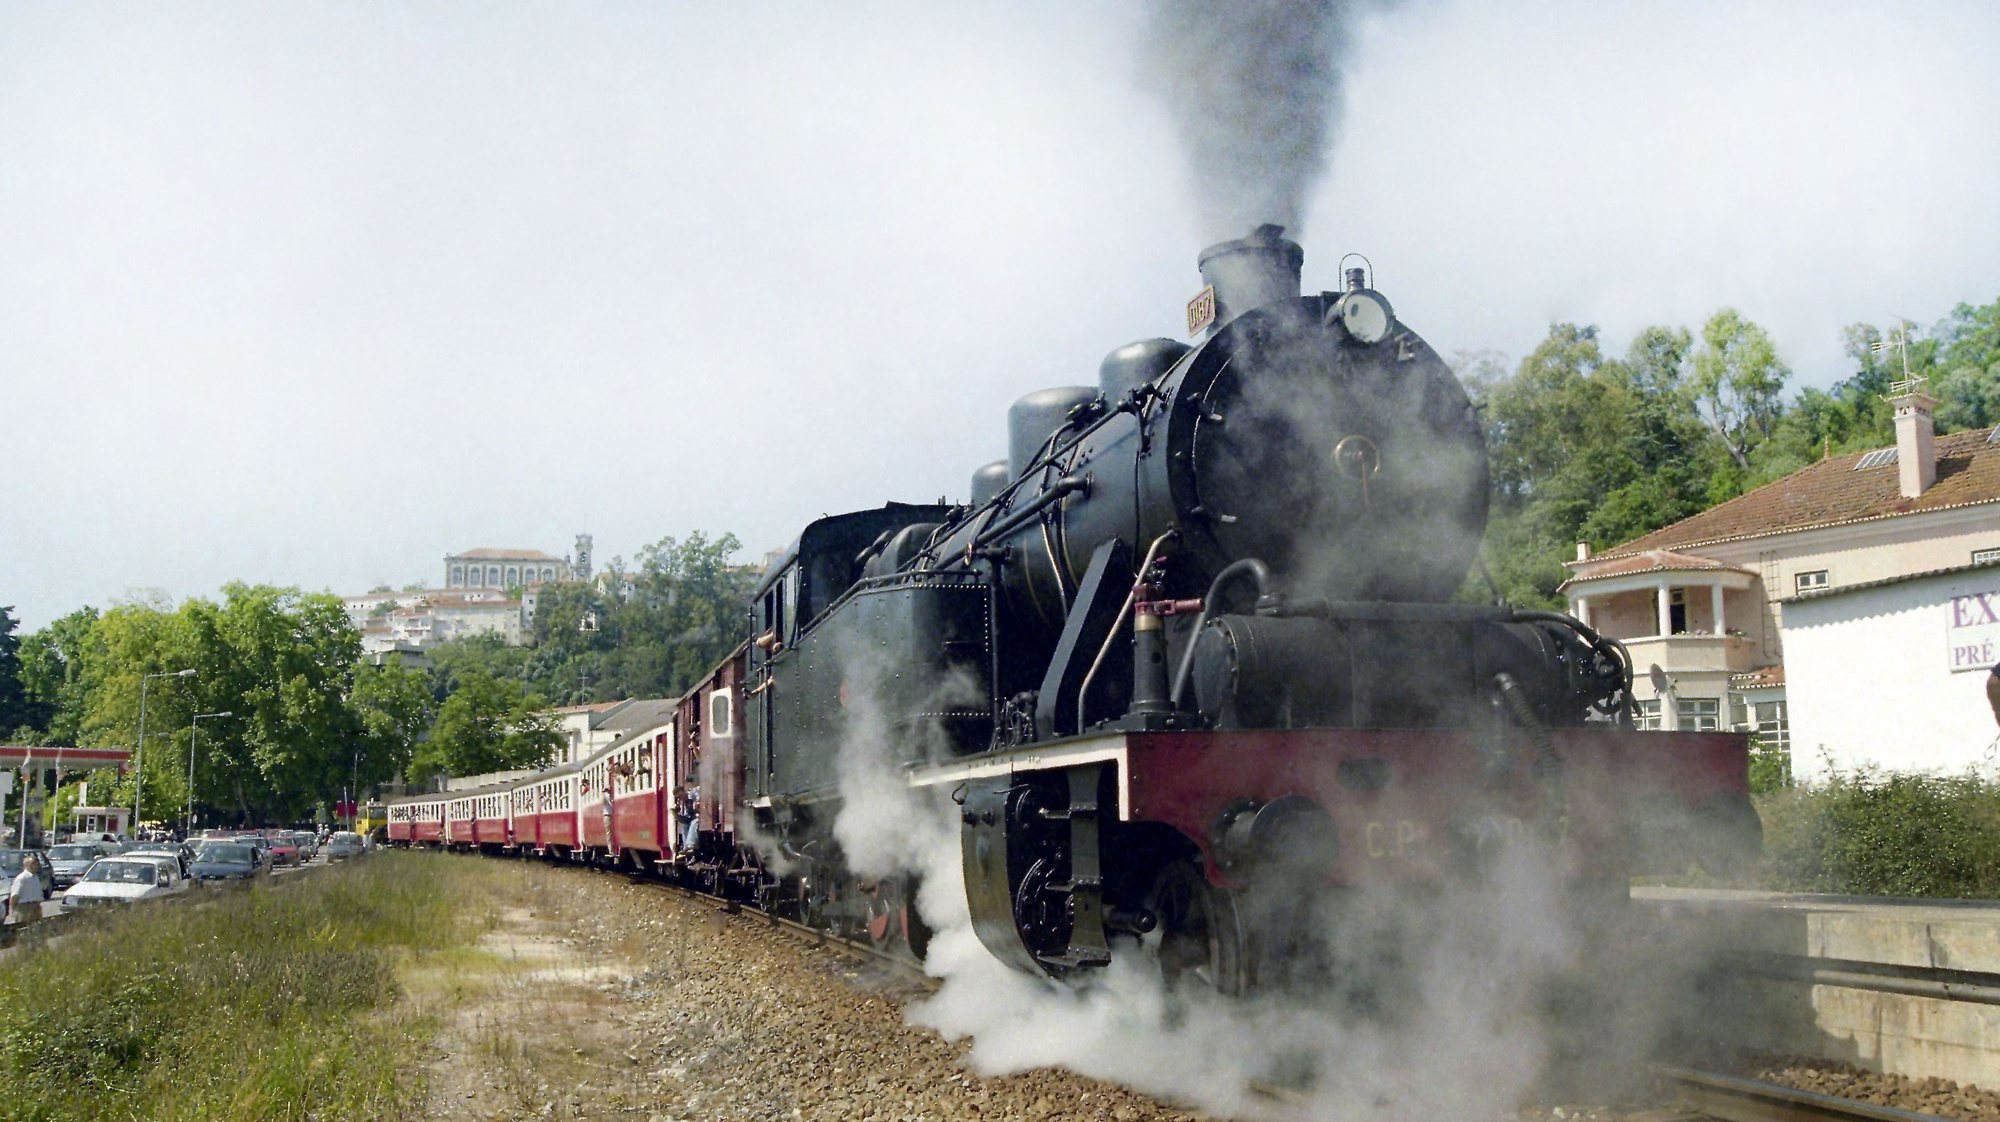 Velha locomotiva a vapor faz a viagem simbólica entre Coimbra e Serpins para celebrar o 101º aniversário de um ex-ferroviário e combatente da I Guerra Mundial, a 26 de Maio de 1996

Paulo Novais / Lusa